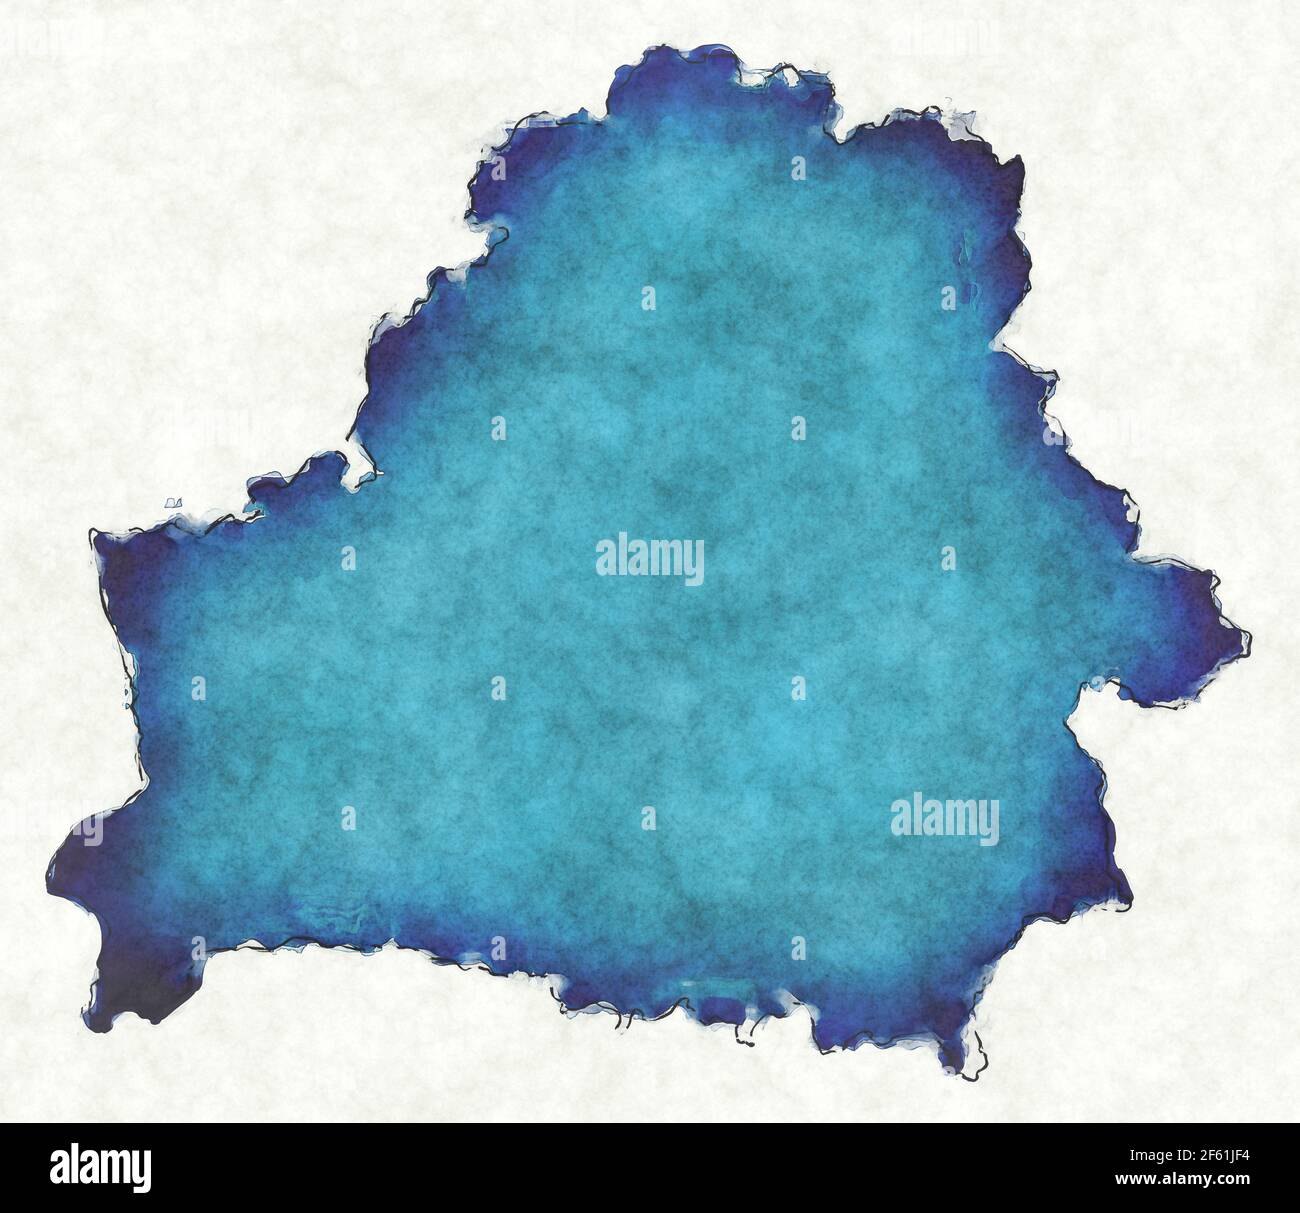 Mappa bielorussa con linee tracciate e illustrazione blu dell'acquerello Foto Stock